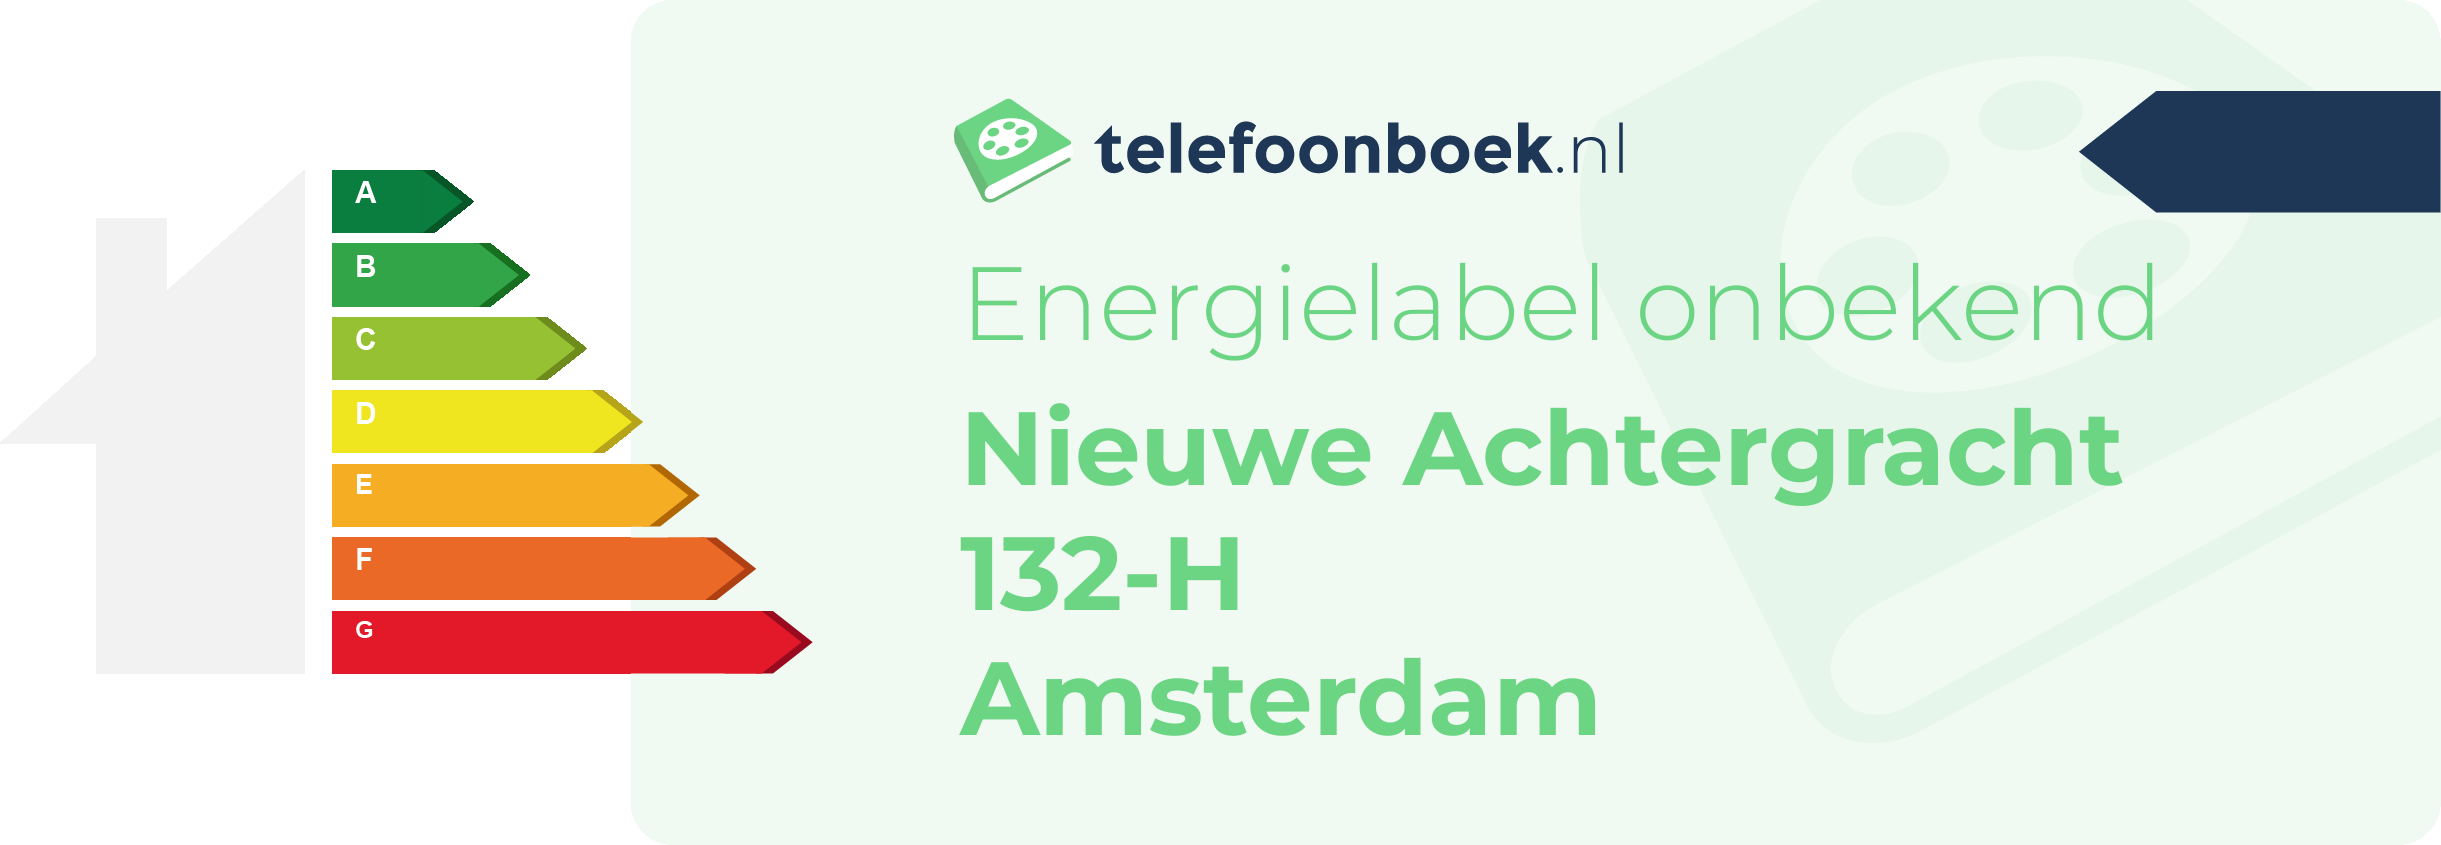 Energielabel Nieuwe Achtergracht 132-H Amsterdam